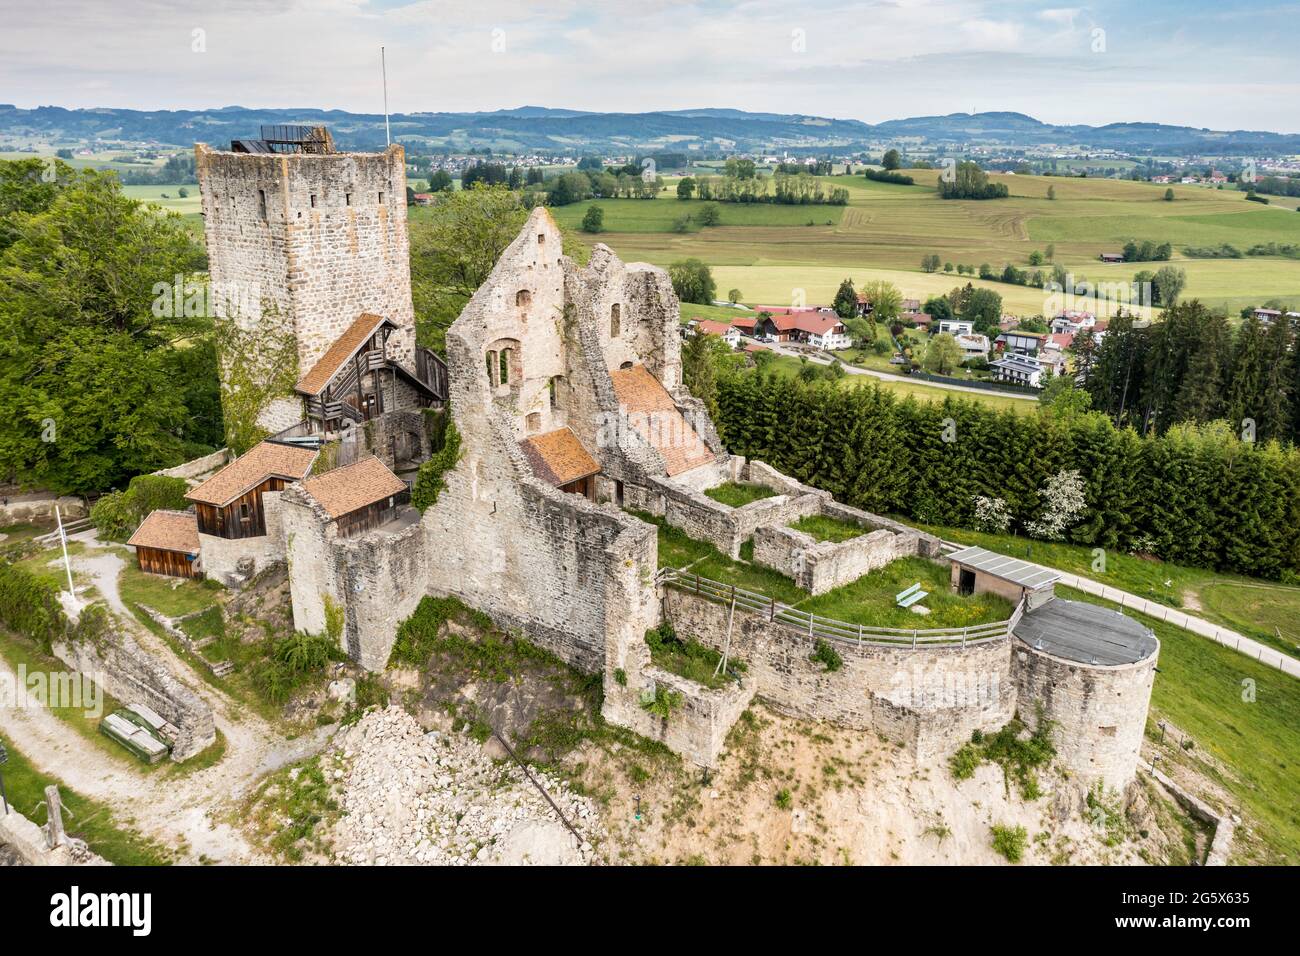 Luftaufnahme der mittelalterlichen Burgruine bei Sulzberg, Allgau, Bayern, Deutschland Stockfoto